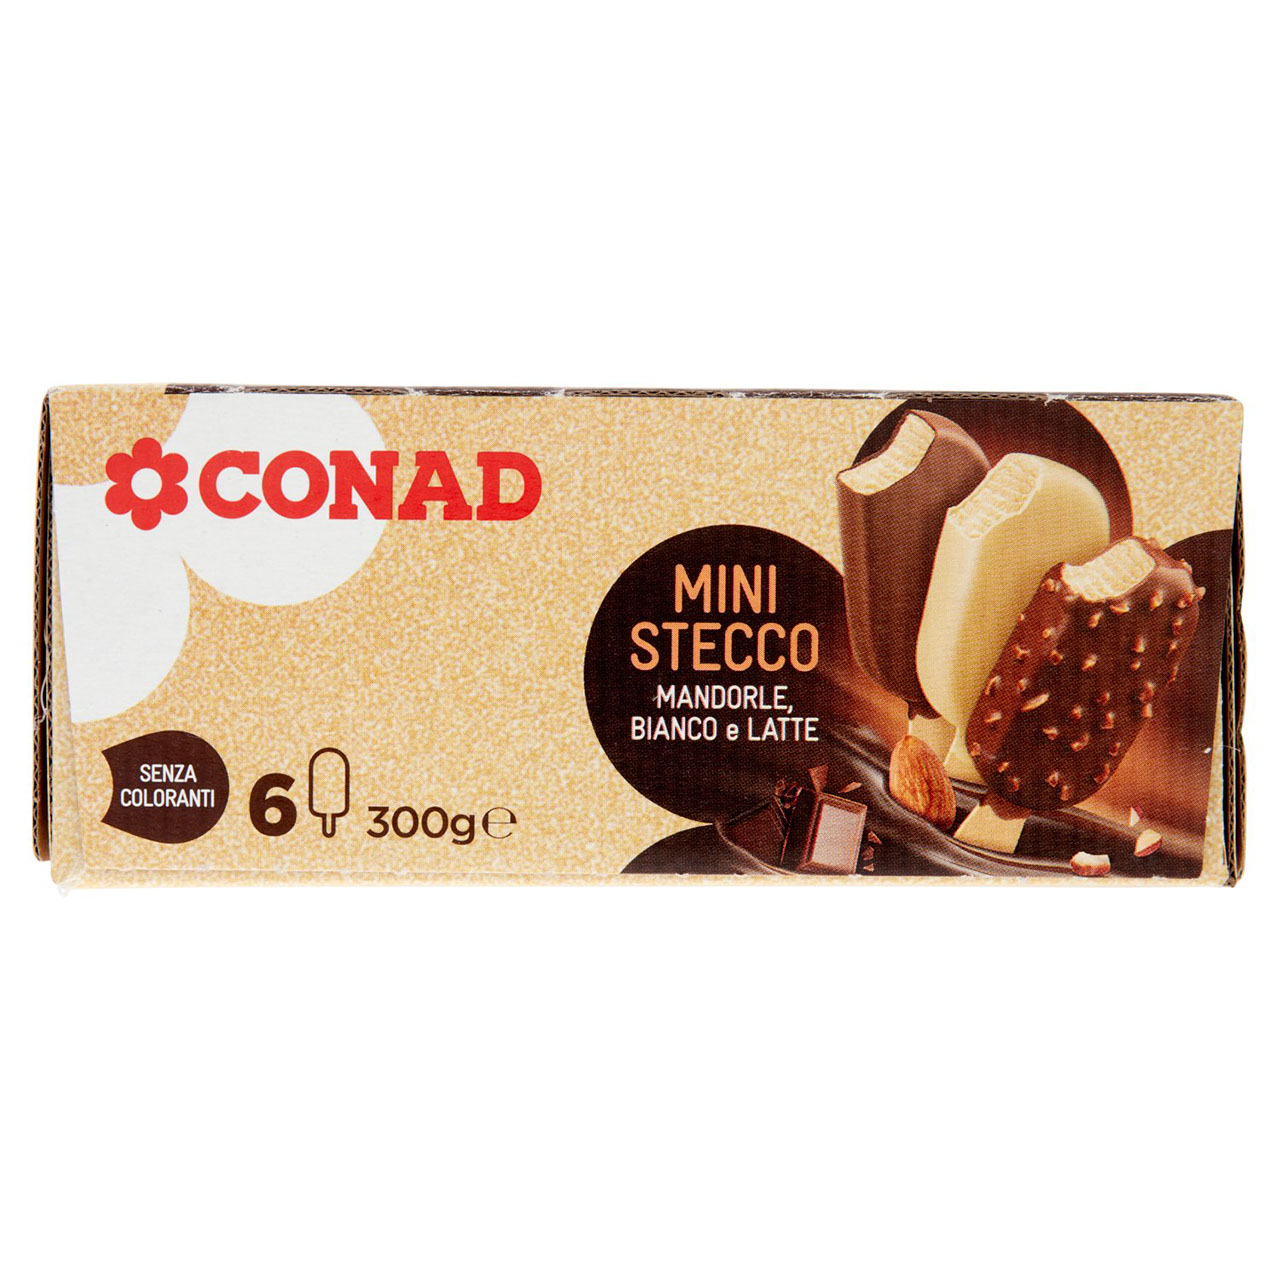 Mini Stecco Mandorle, Bianco e Latte Conad online